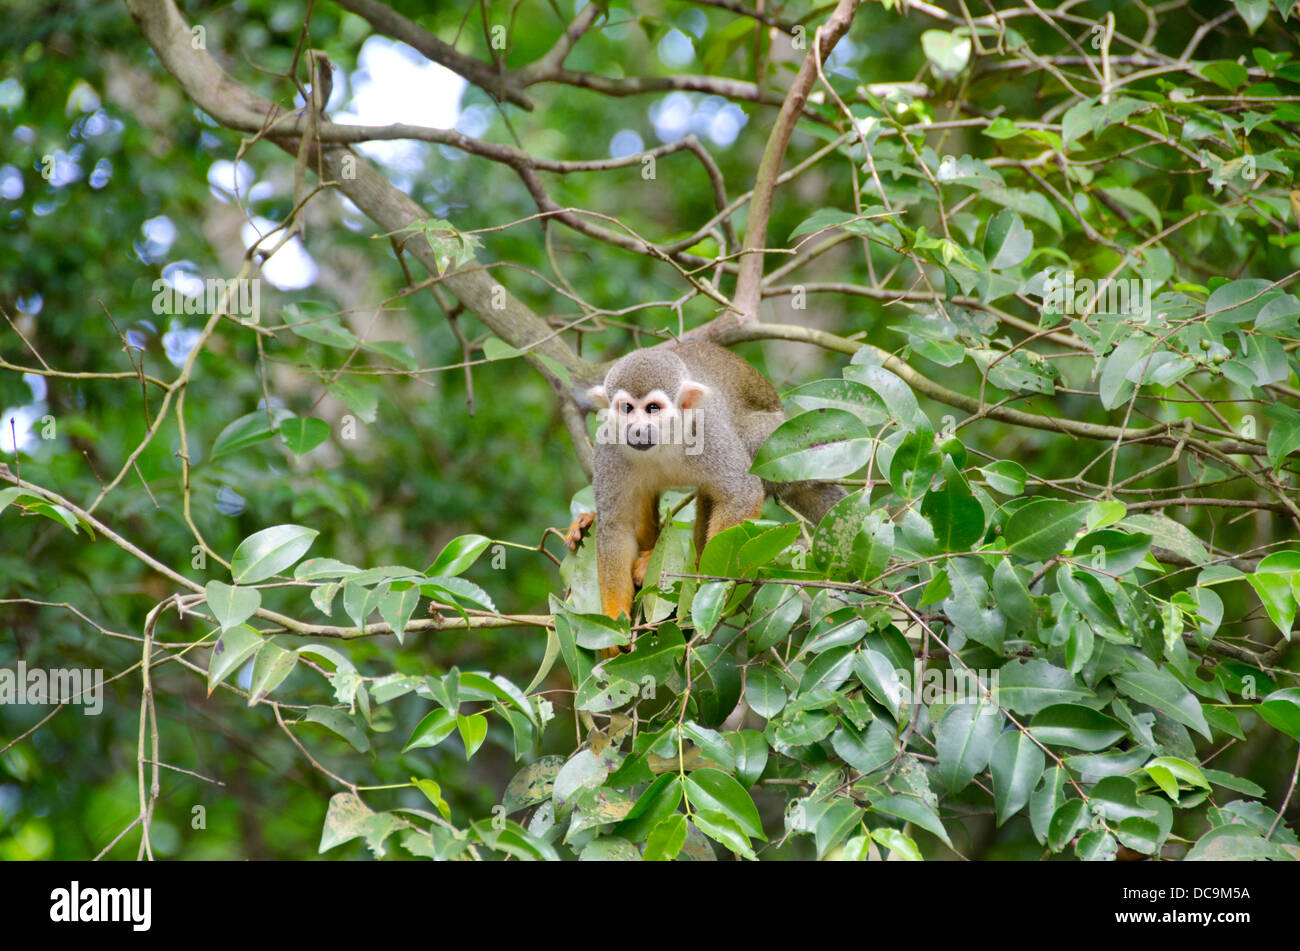 Territorio Francese d'oltremare, Guiana francese, salvezza isole, Ile Royale. Wild Scimmia di scoiattolo (Saimiri sciureus) nella struttura ad albero. Foto Stock